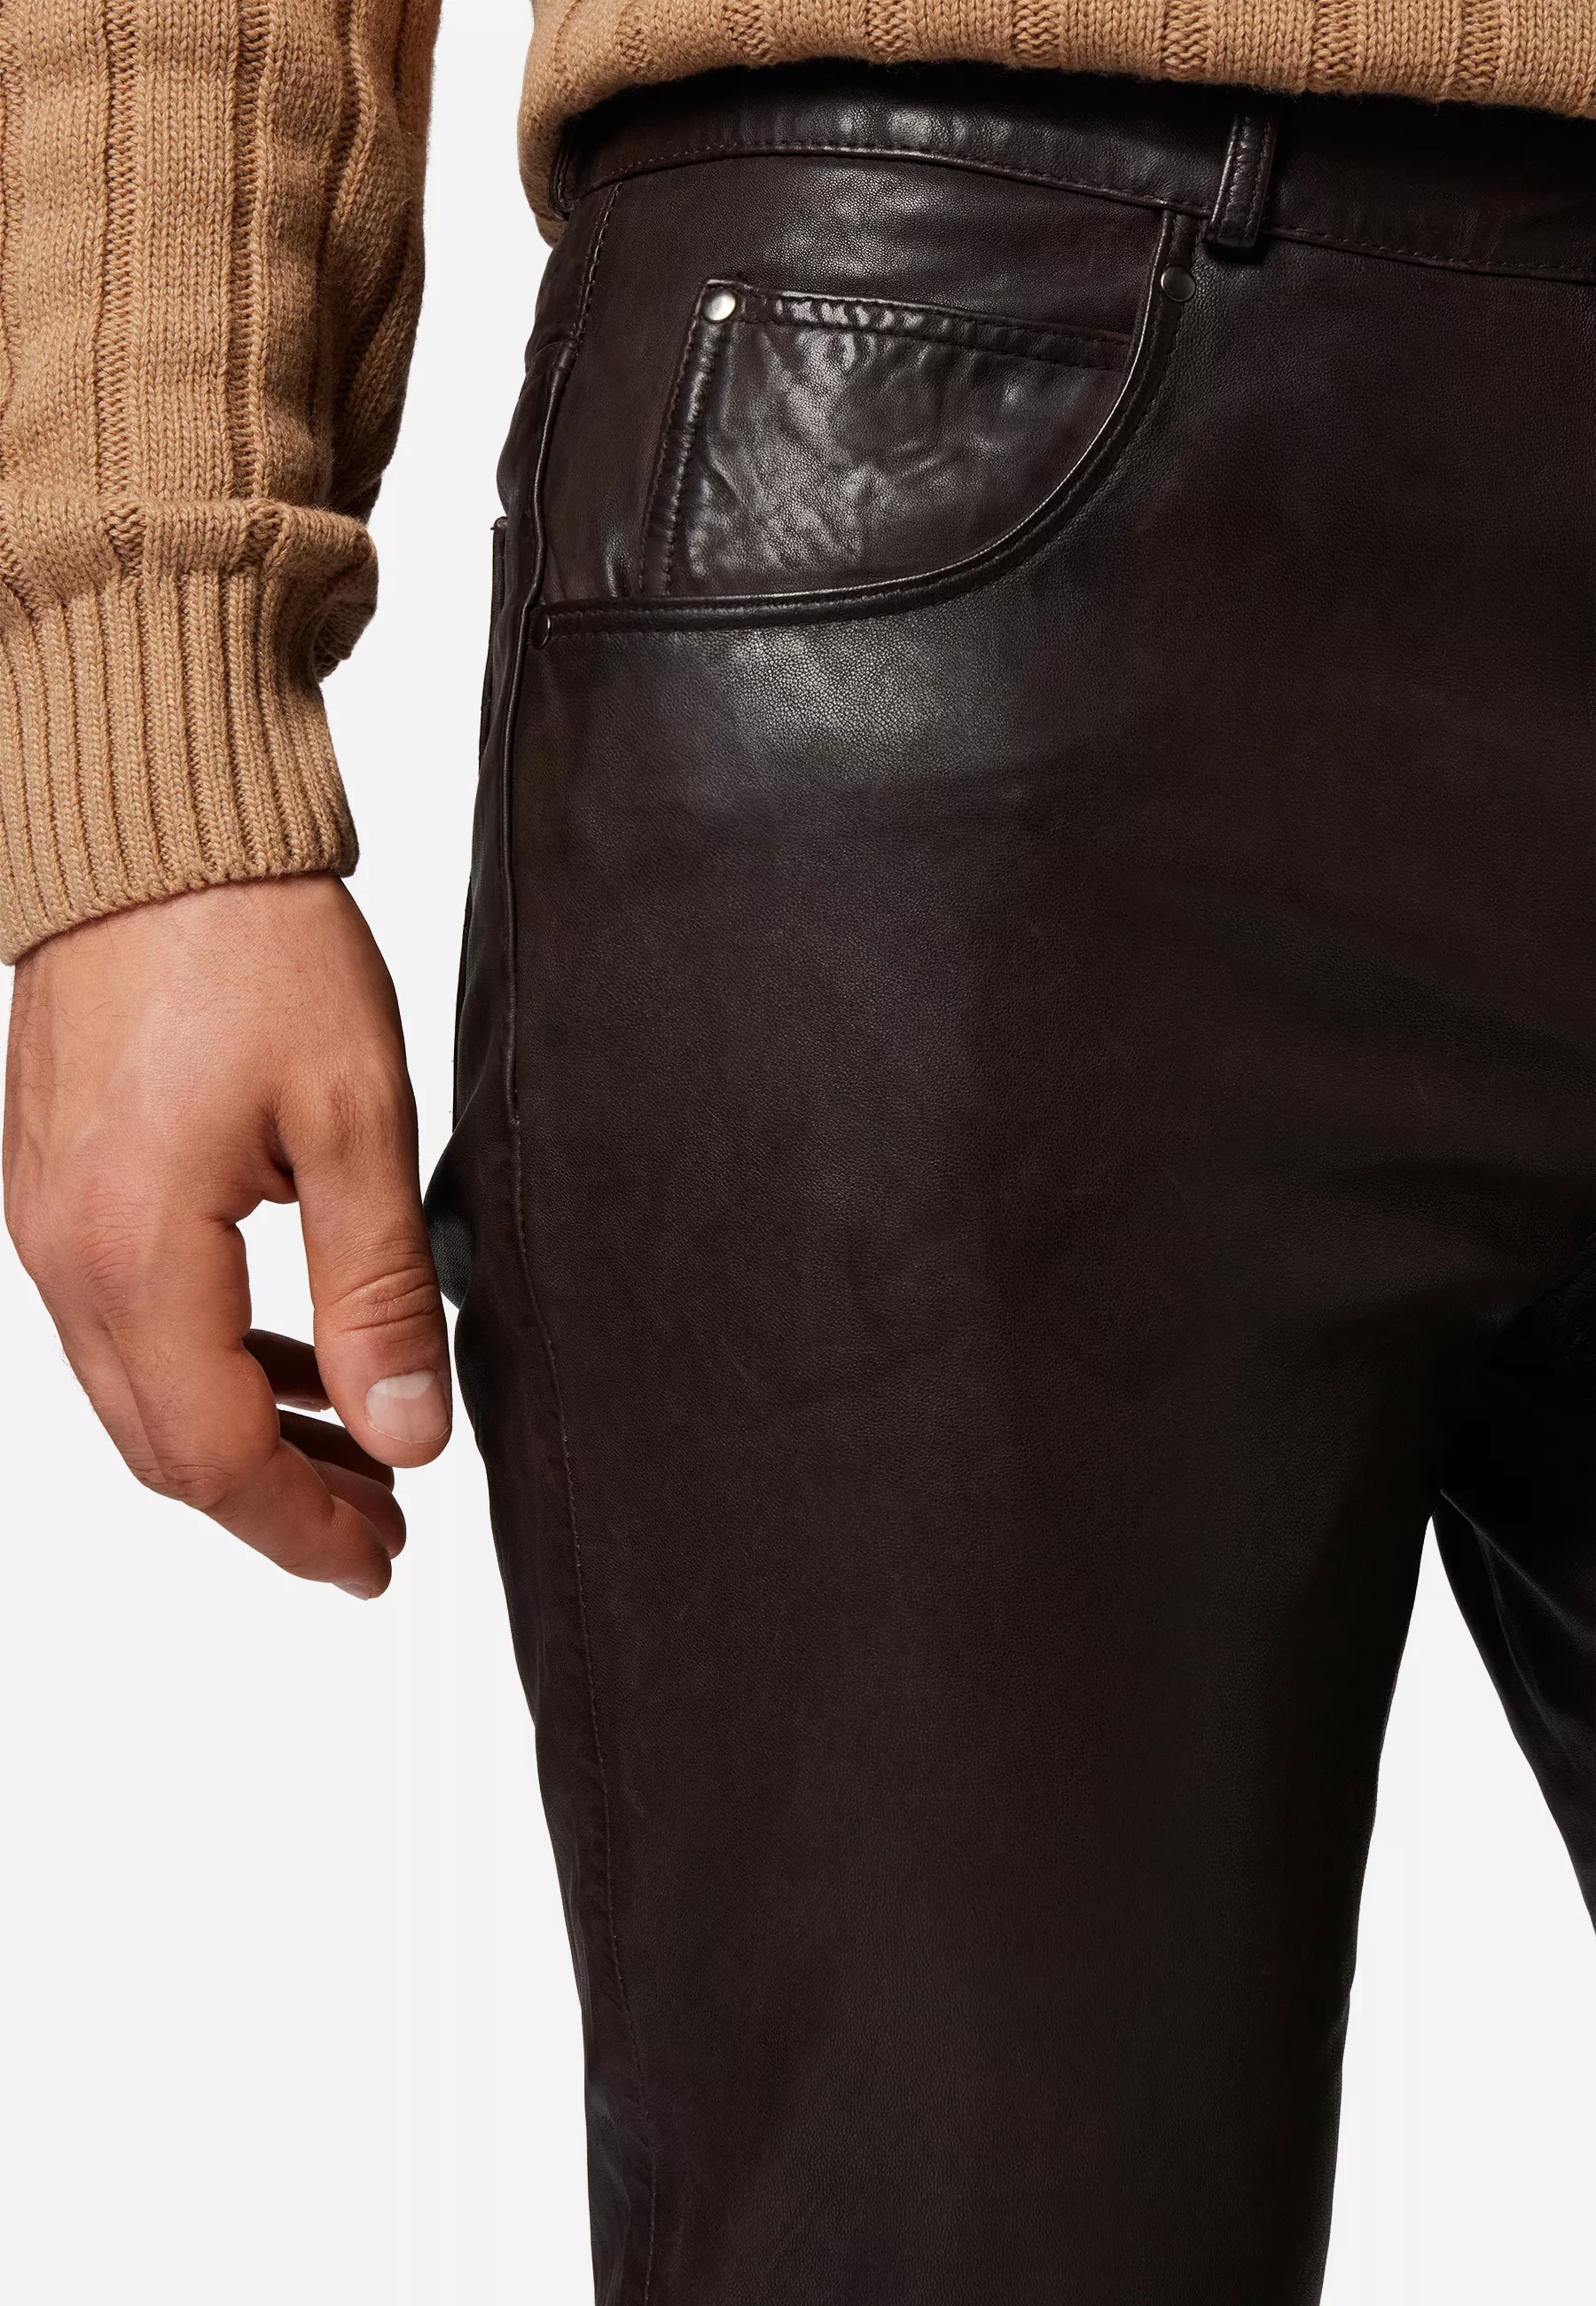 Herren Lederhose Trant Pant in Braun von Ricano, Detailansicht Taschen am Model